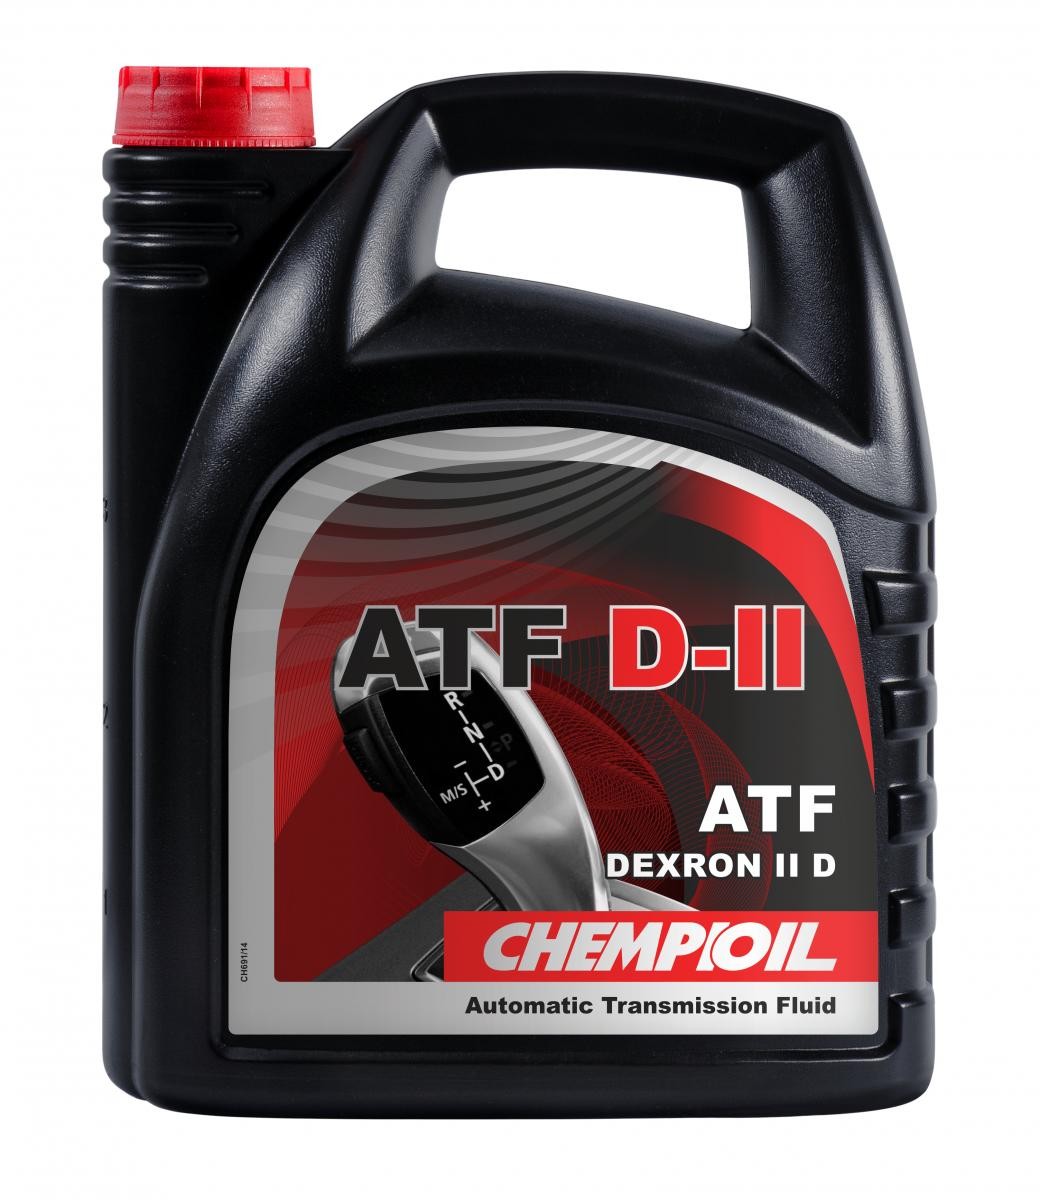 CHEMPIOIL ATF, D-II CH8901-4 Automatic transmission fluid ATF IID, 4l, red